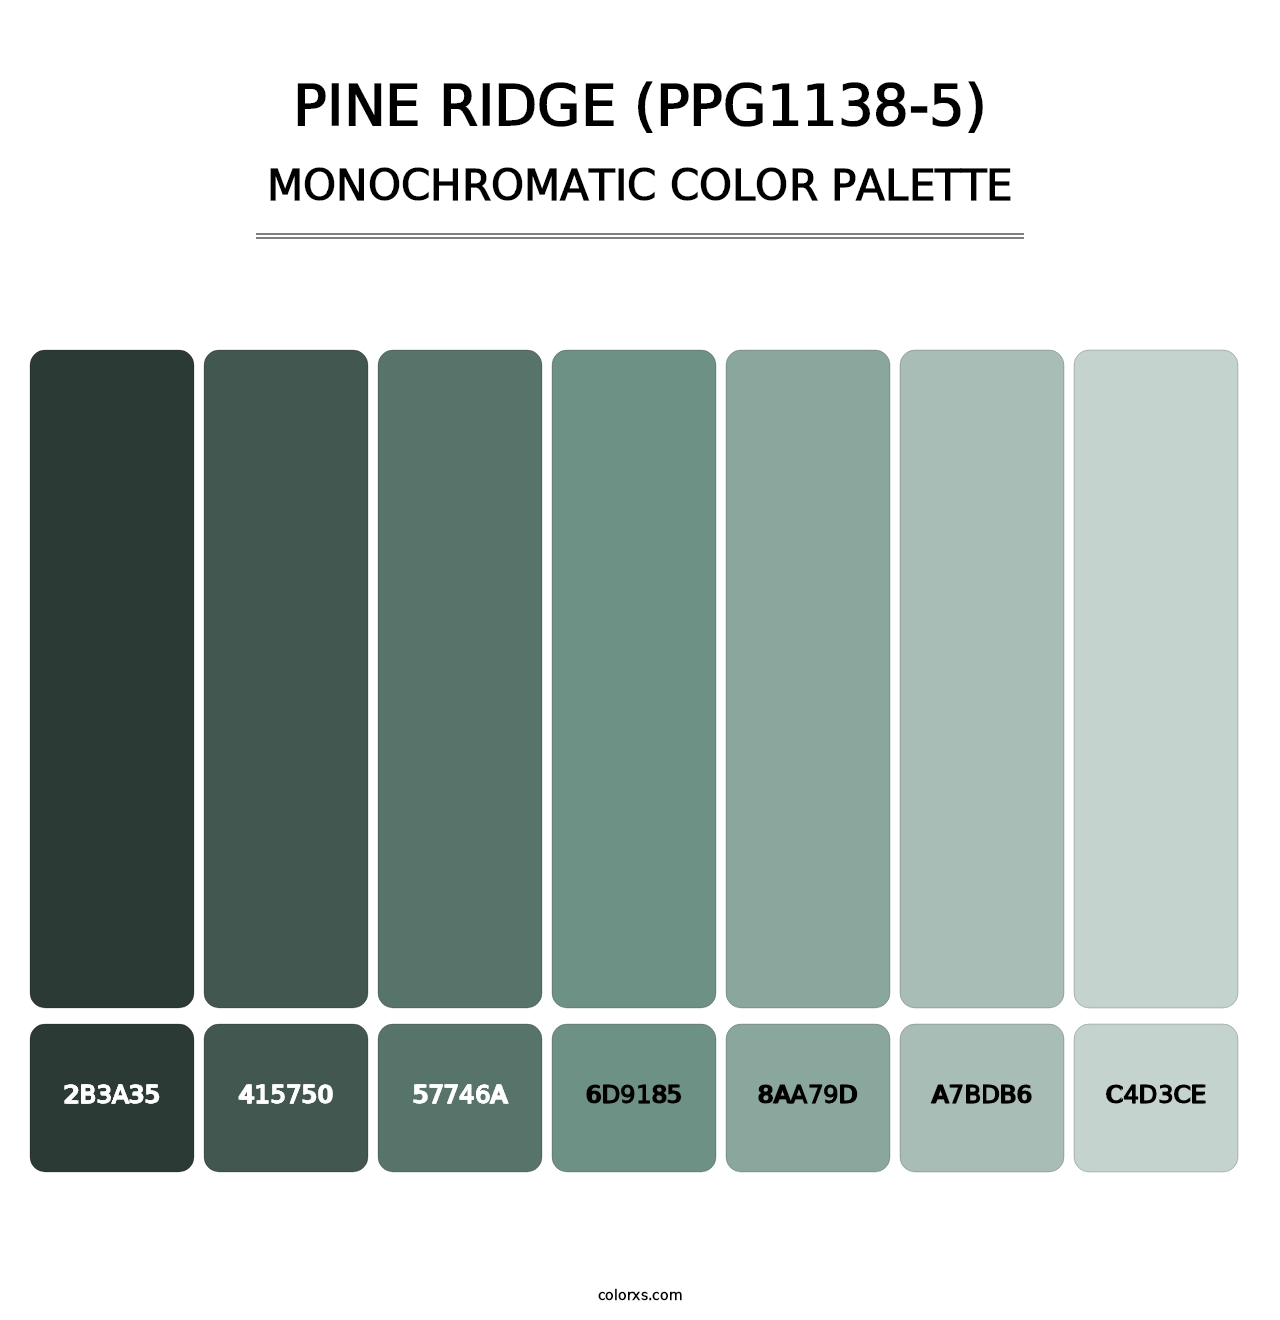 Pine Ridge (PPG1138-5) - Monochromatic Color Palette